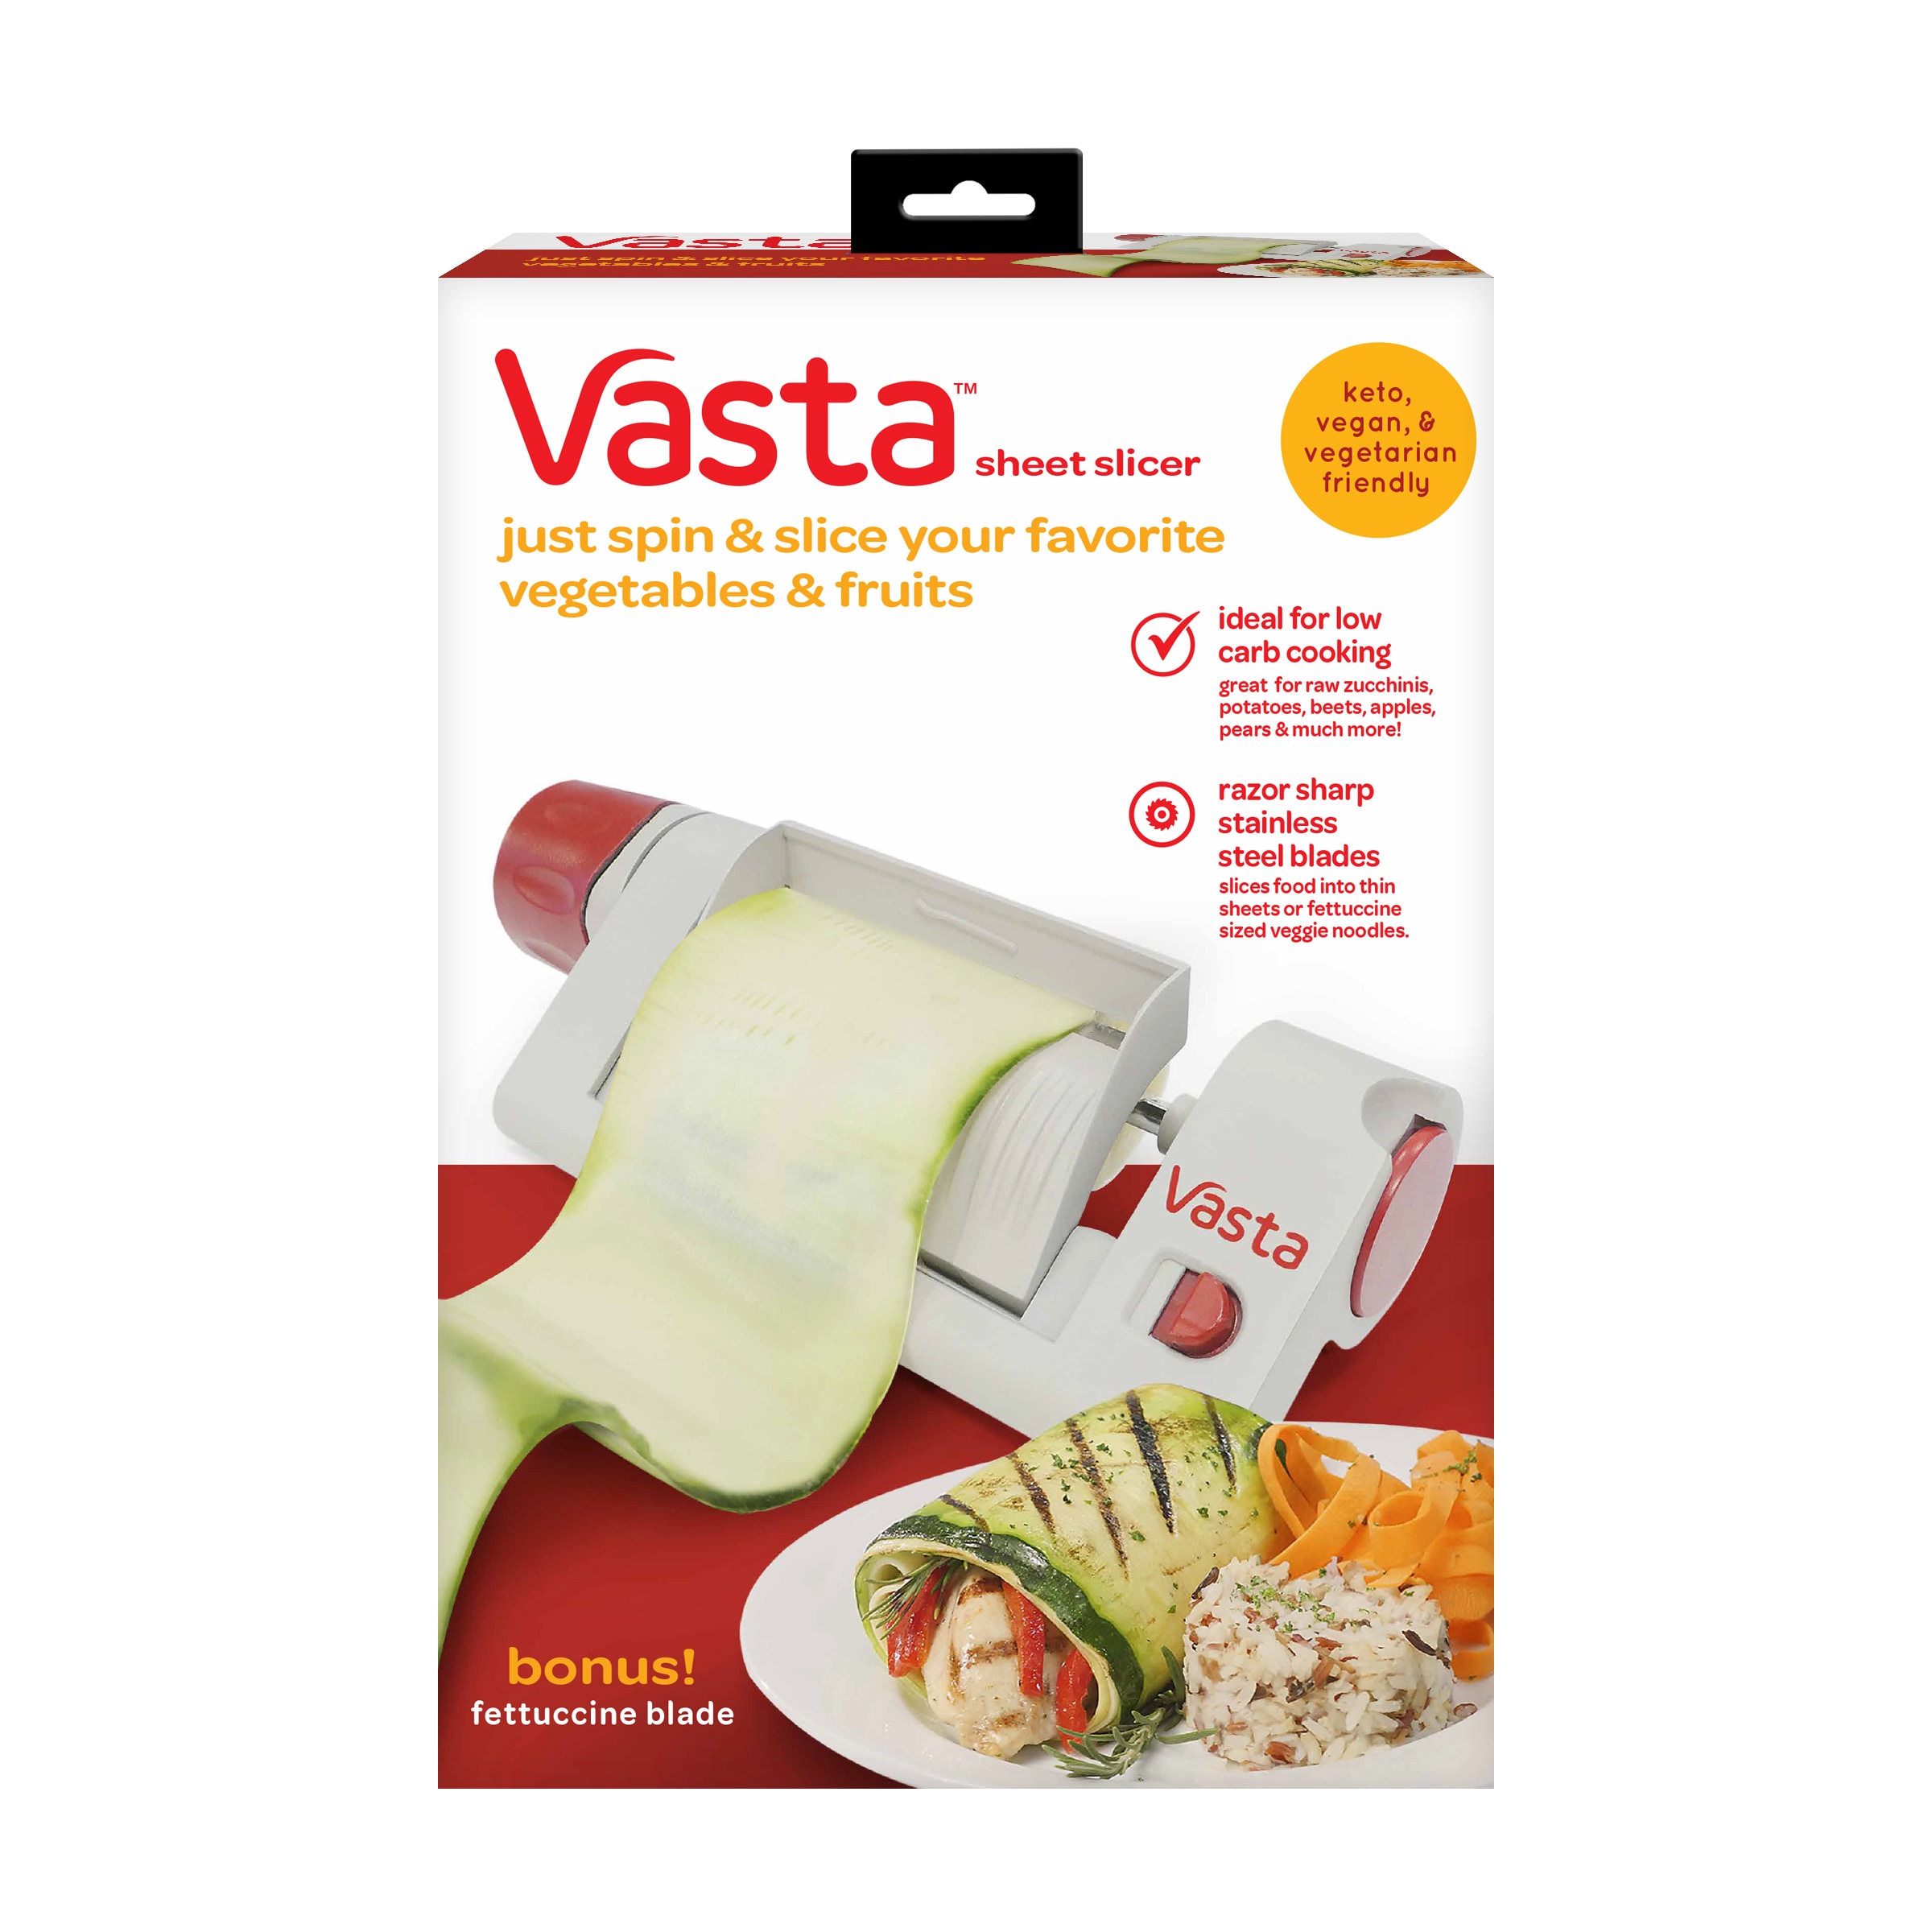 Vasta Sheet Slicer - Stainless Steel Rotary Food Slicer for